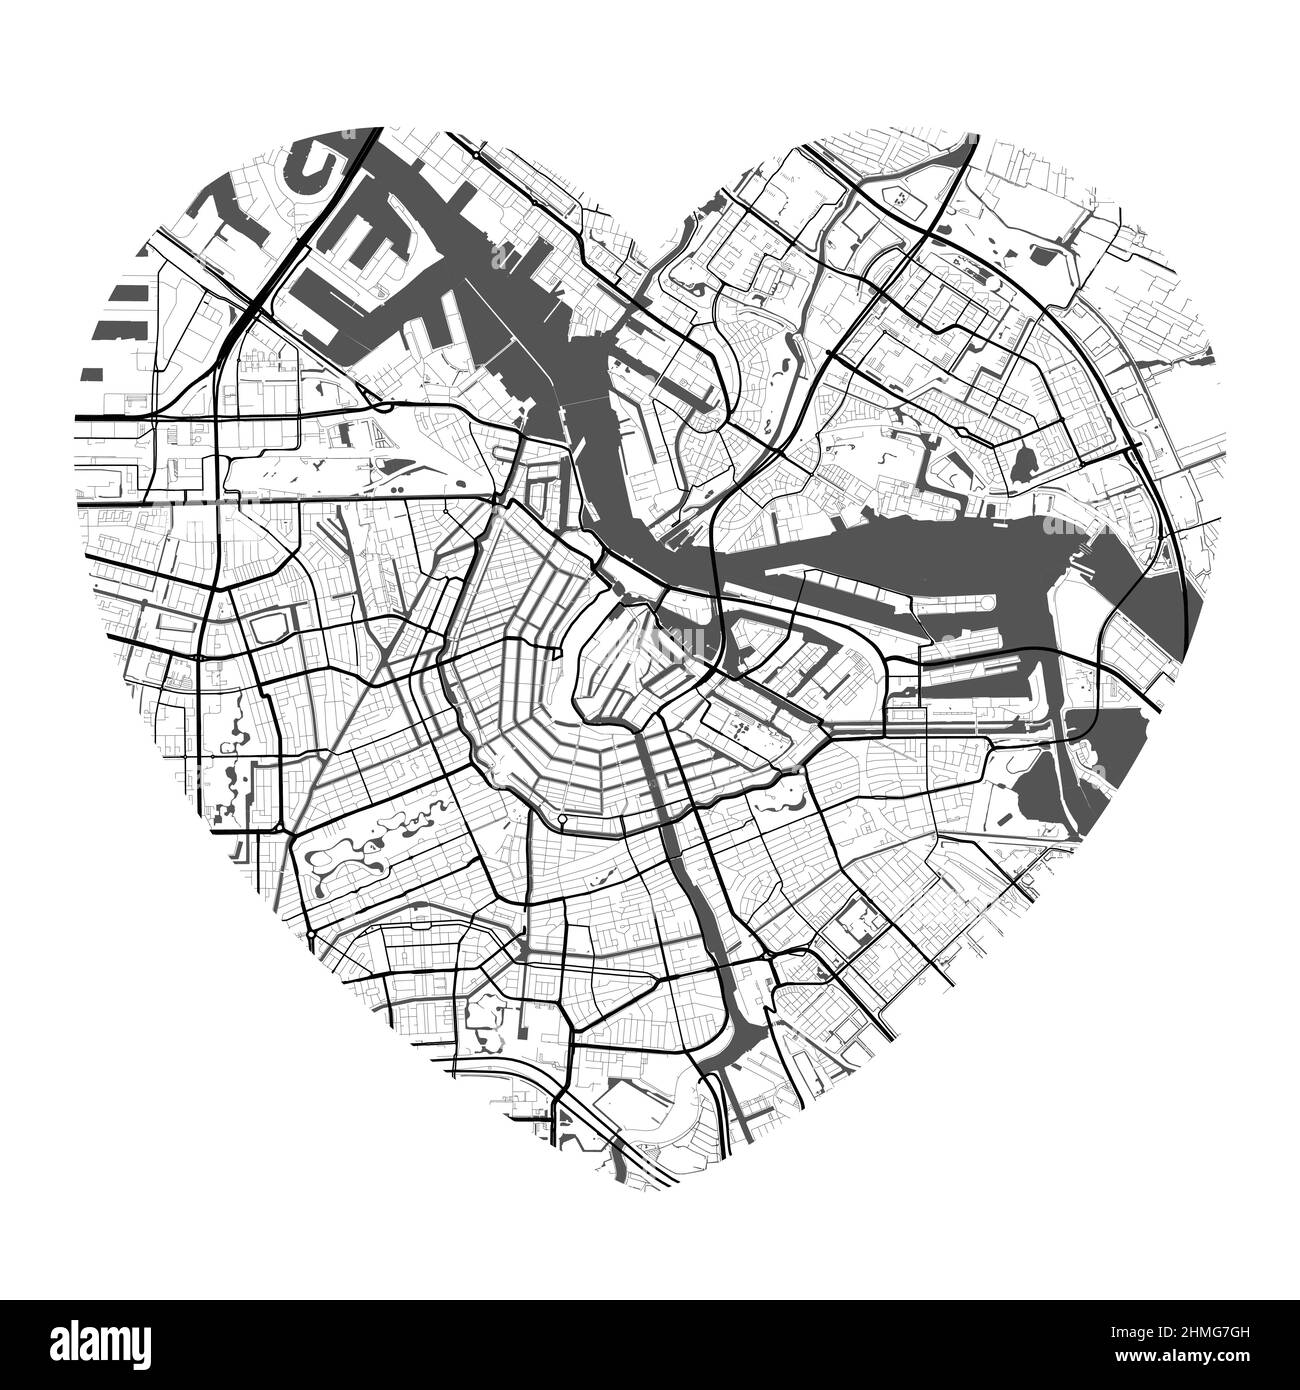 Mappa vettoriale a forma di cuore della città di Amsterdam. Illustrazione dei colori bianco e nero. Strade, strade, fiumi. Illustrazione Vettoriale